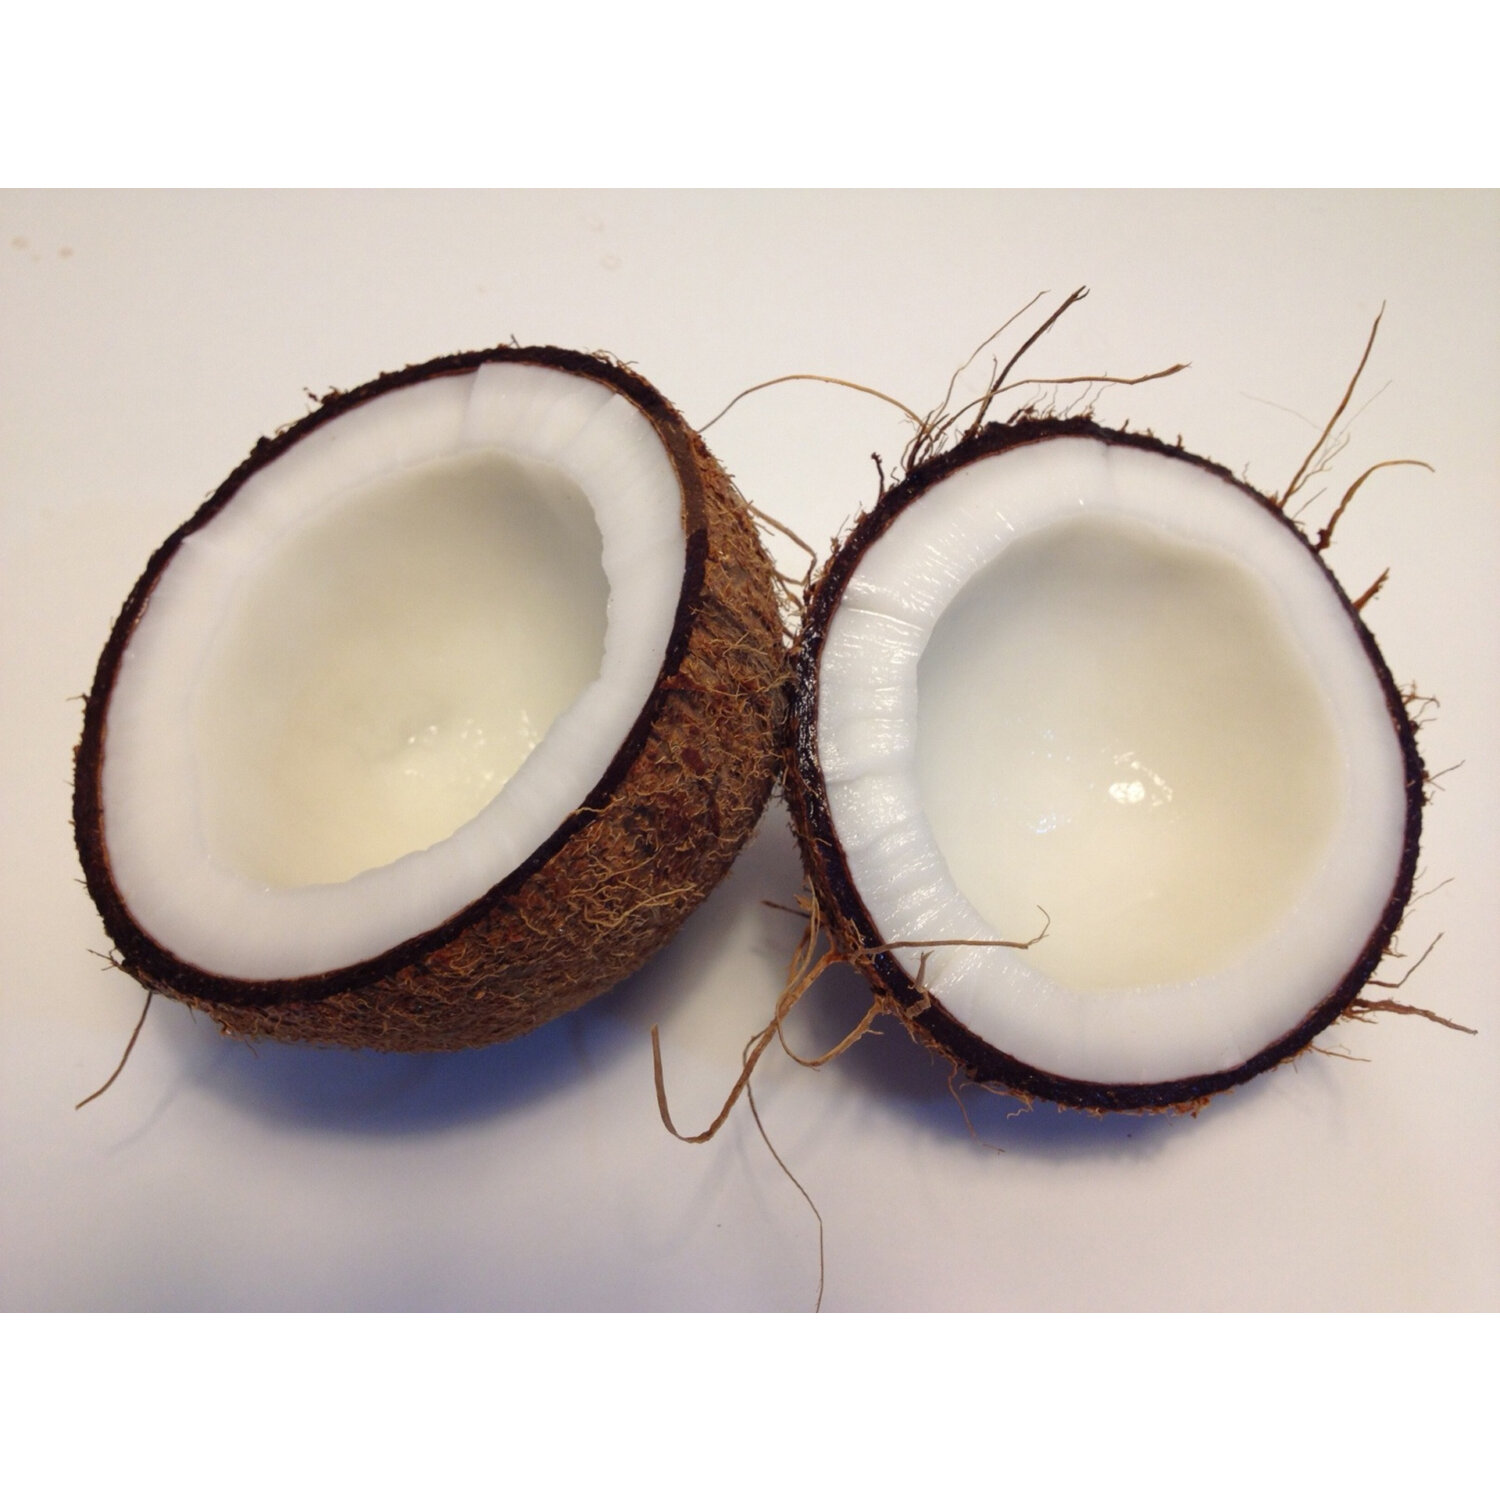 Какой на вкус Кокос. Фото Ококос. Q10 с кокосовым маслом